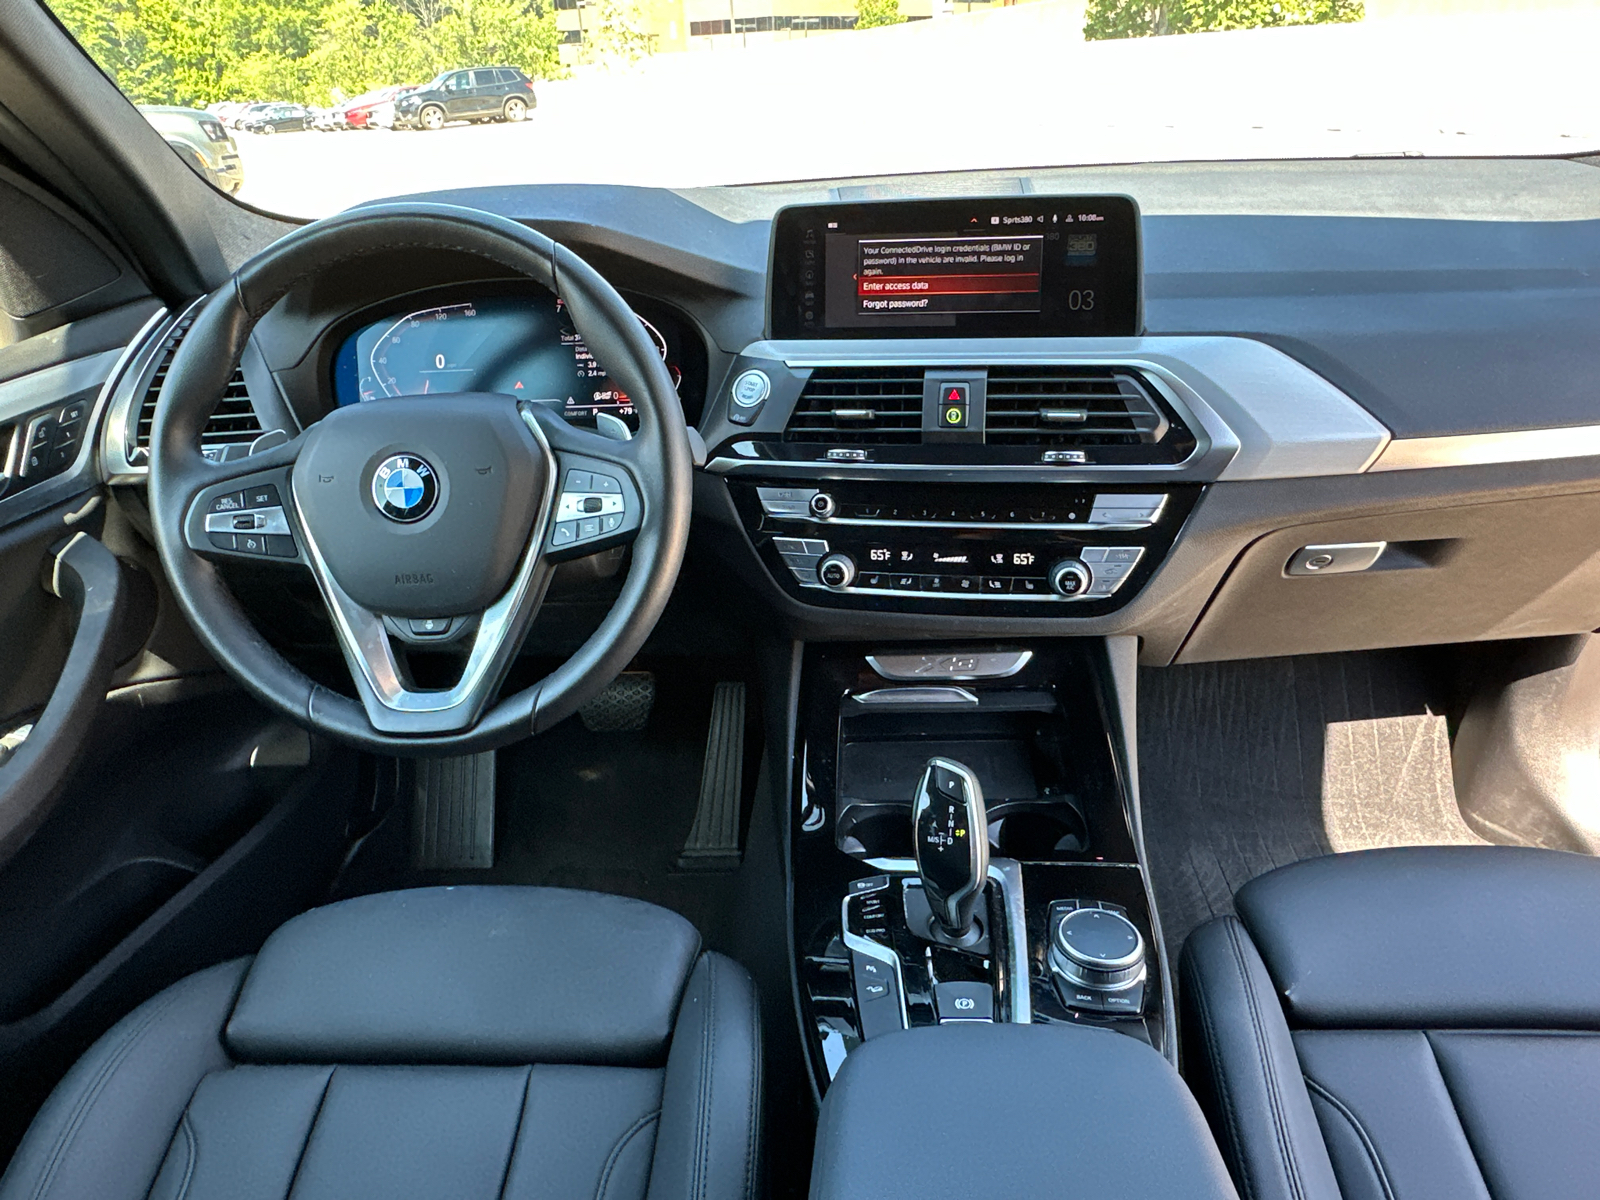 2021 BMW X3 xDrive30i 13